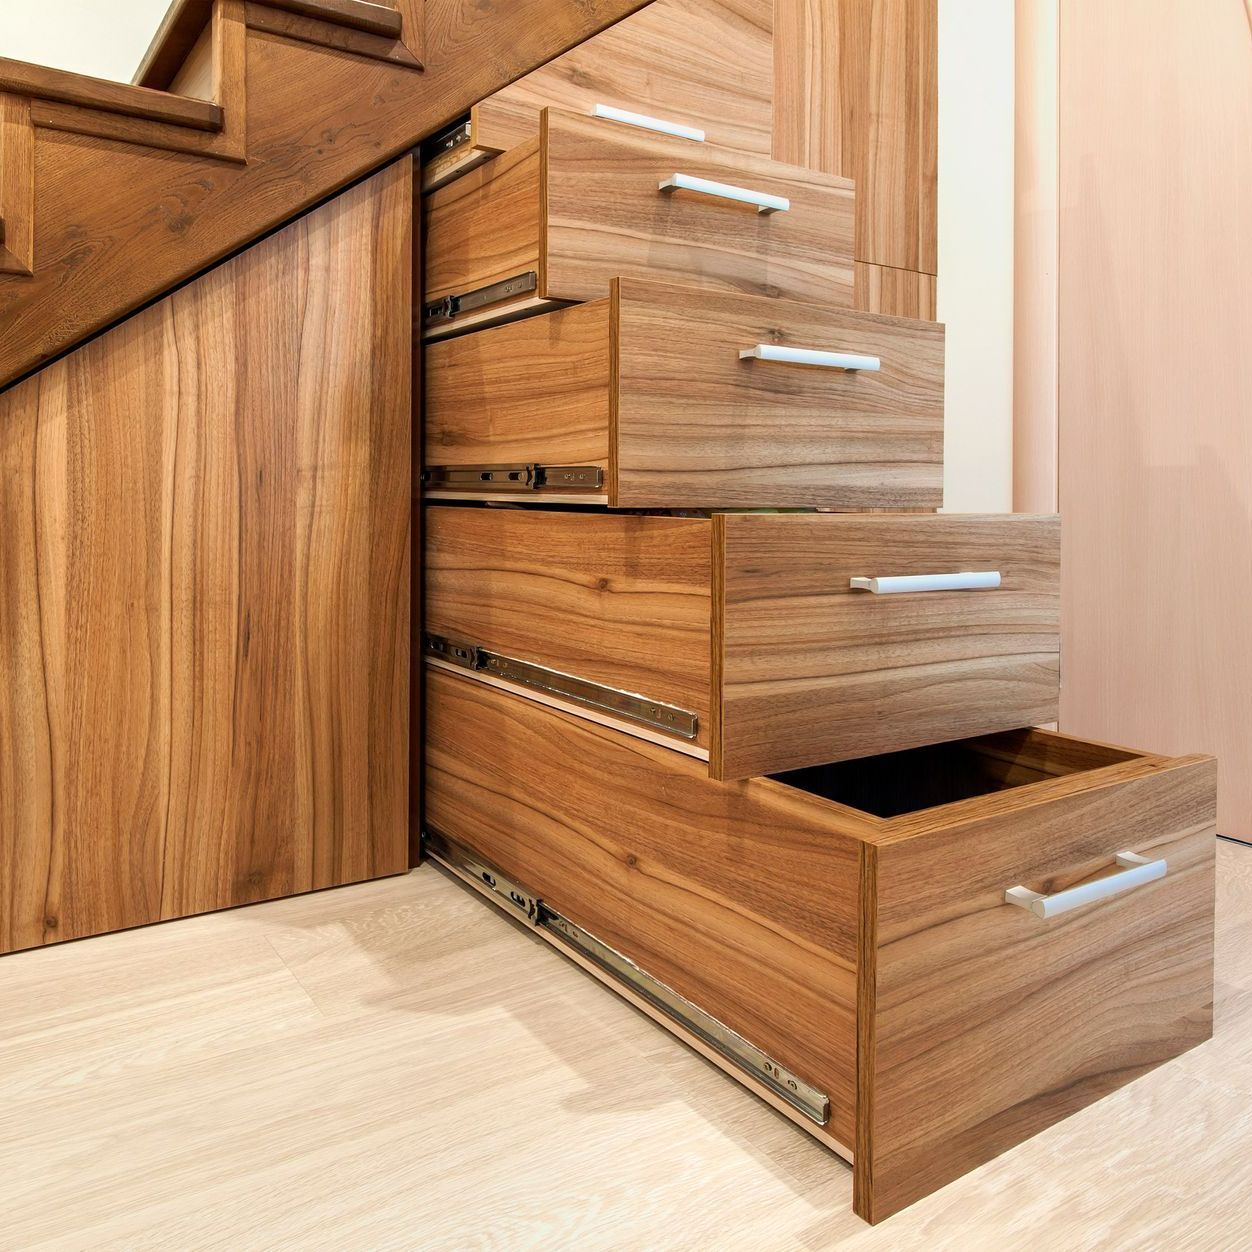 Escalier en bois avec rangements intégrés